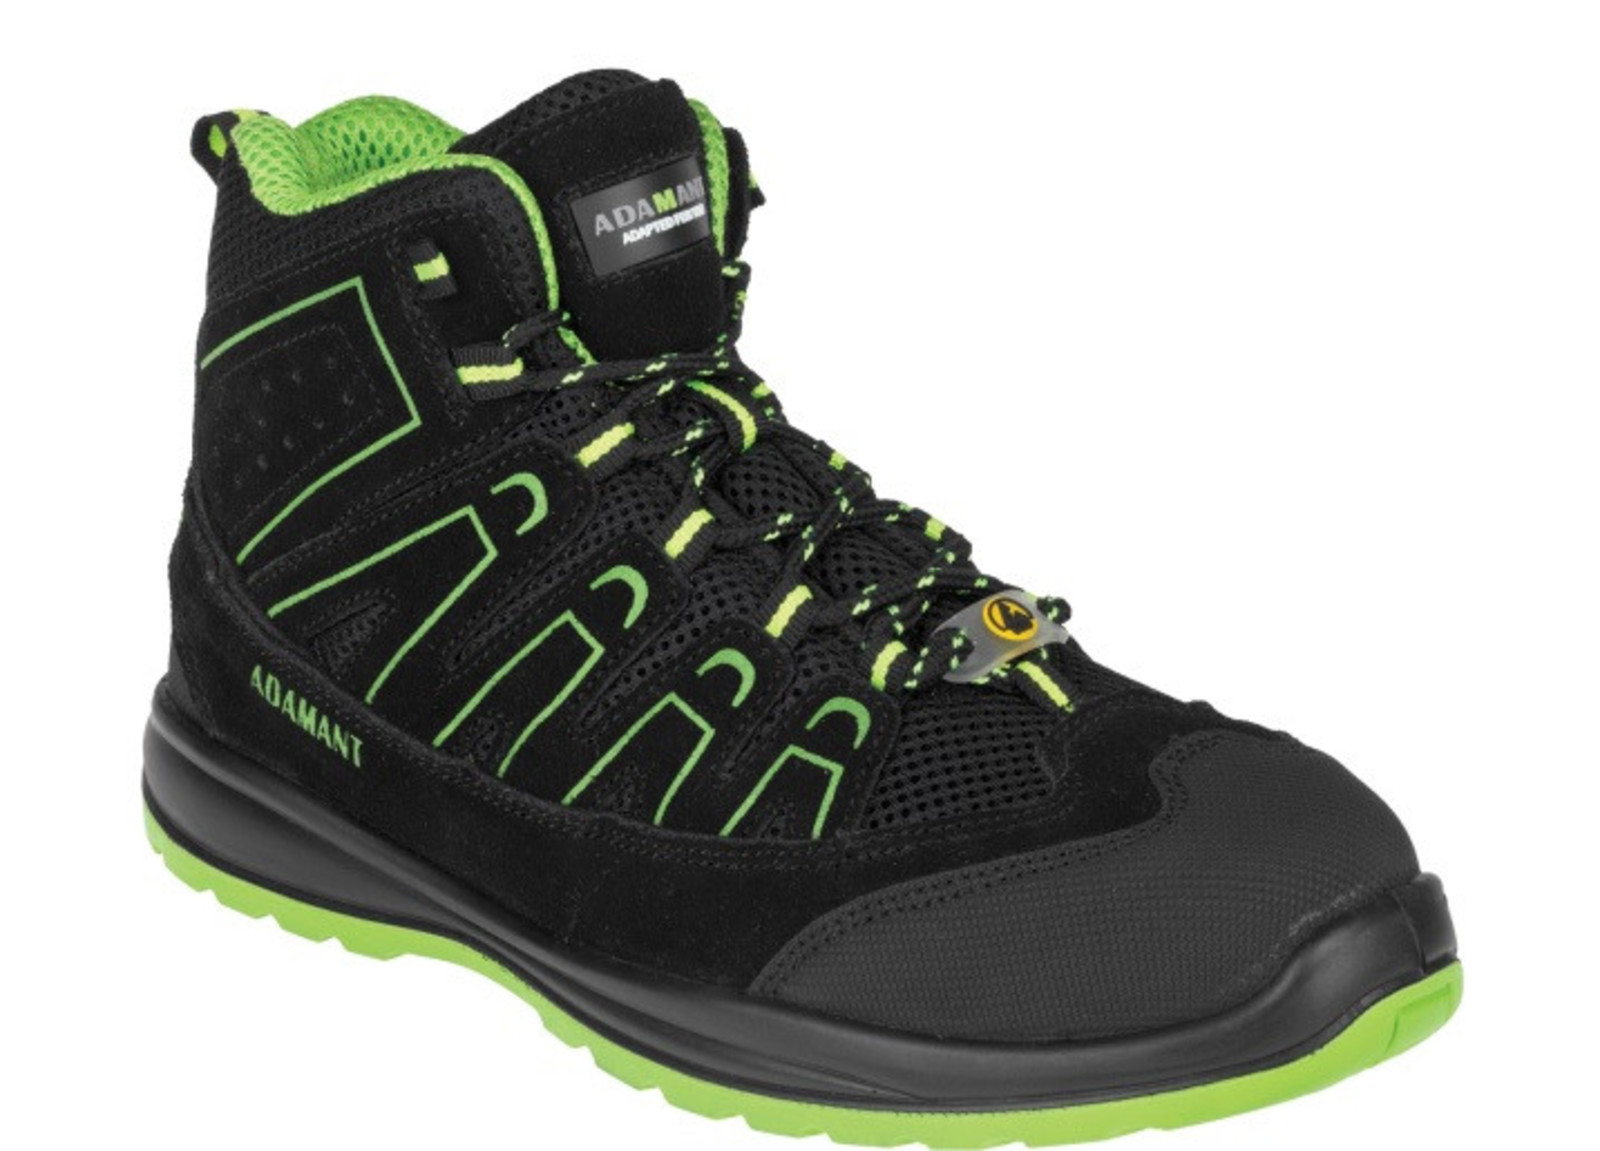 Bezpečnostná obuv Adamant Alegro S1P ESD - veľkosť: 46, farba: čierna/zelená